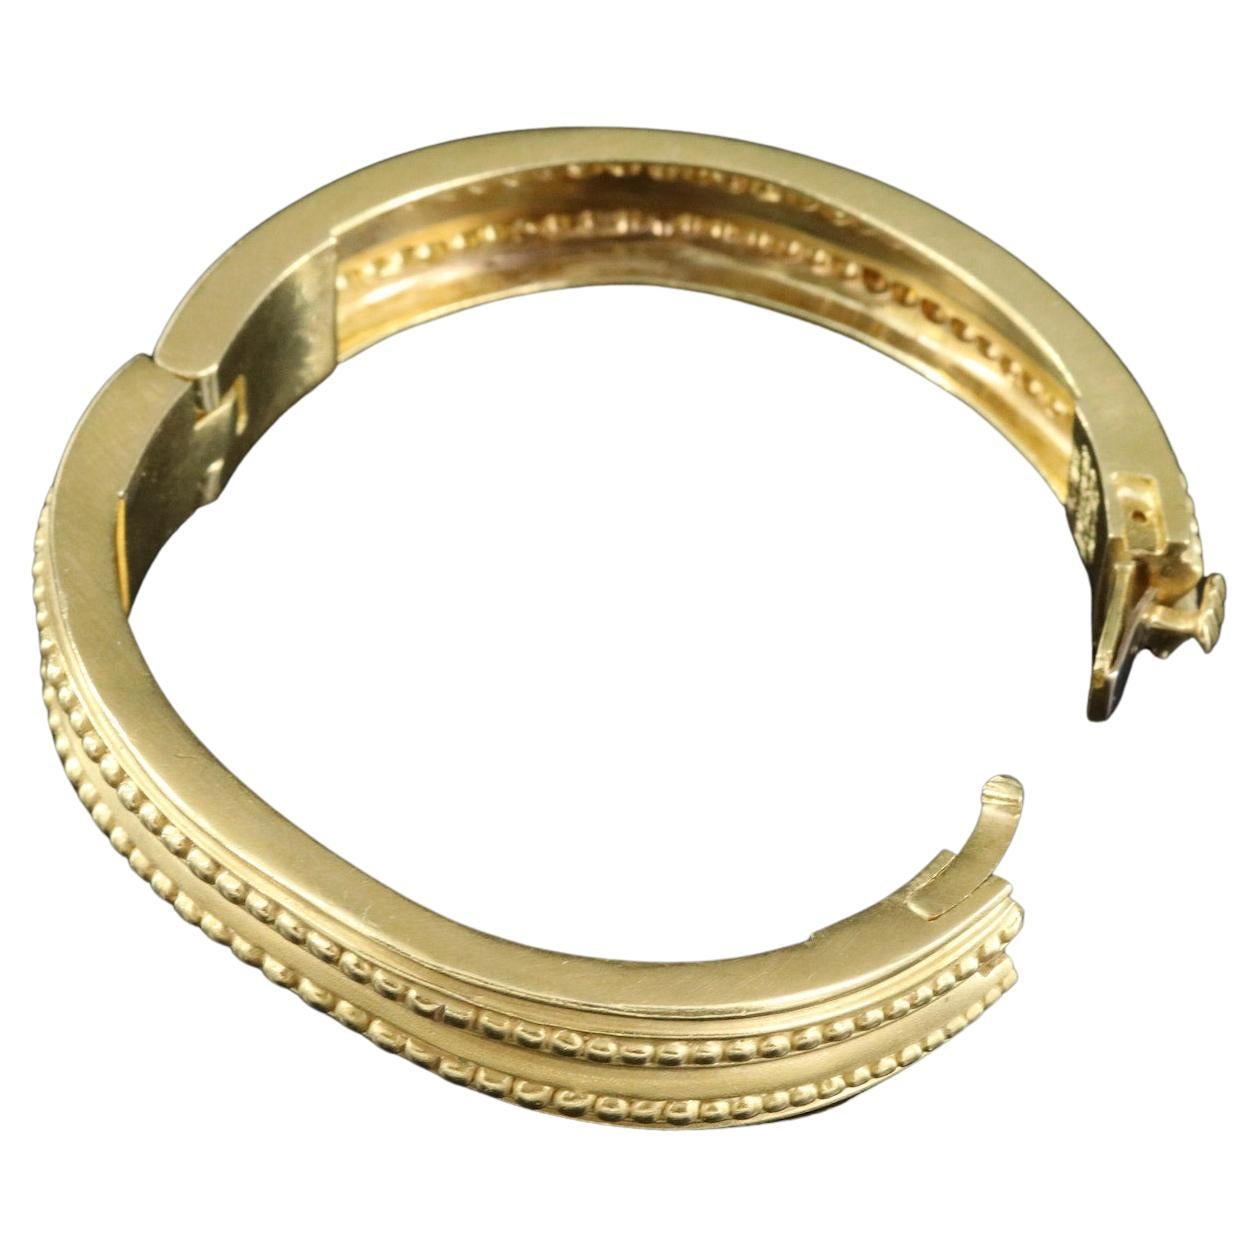 Stunning, Rare Find!
Vintage Vahe Naltchayan 1986 Gold Bracelet Set in 18K Solid Gold

Brand/Designer:	Vahe Naltchayan
Style:	Vintage
Materials:	18K Gold
Bracelet Length:	6.00